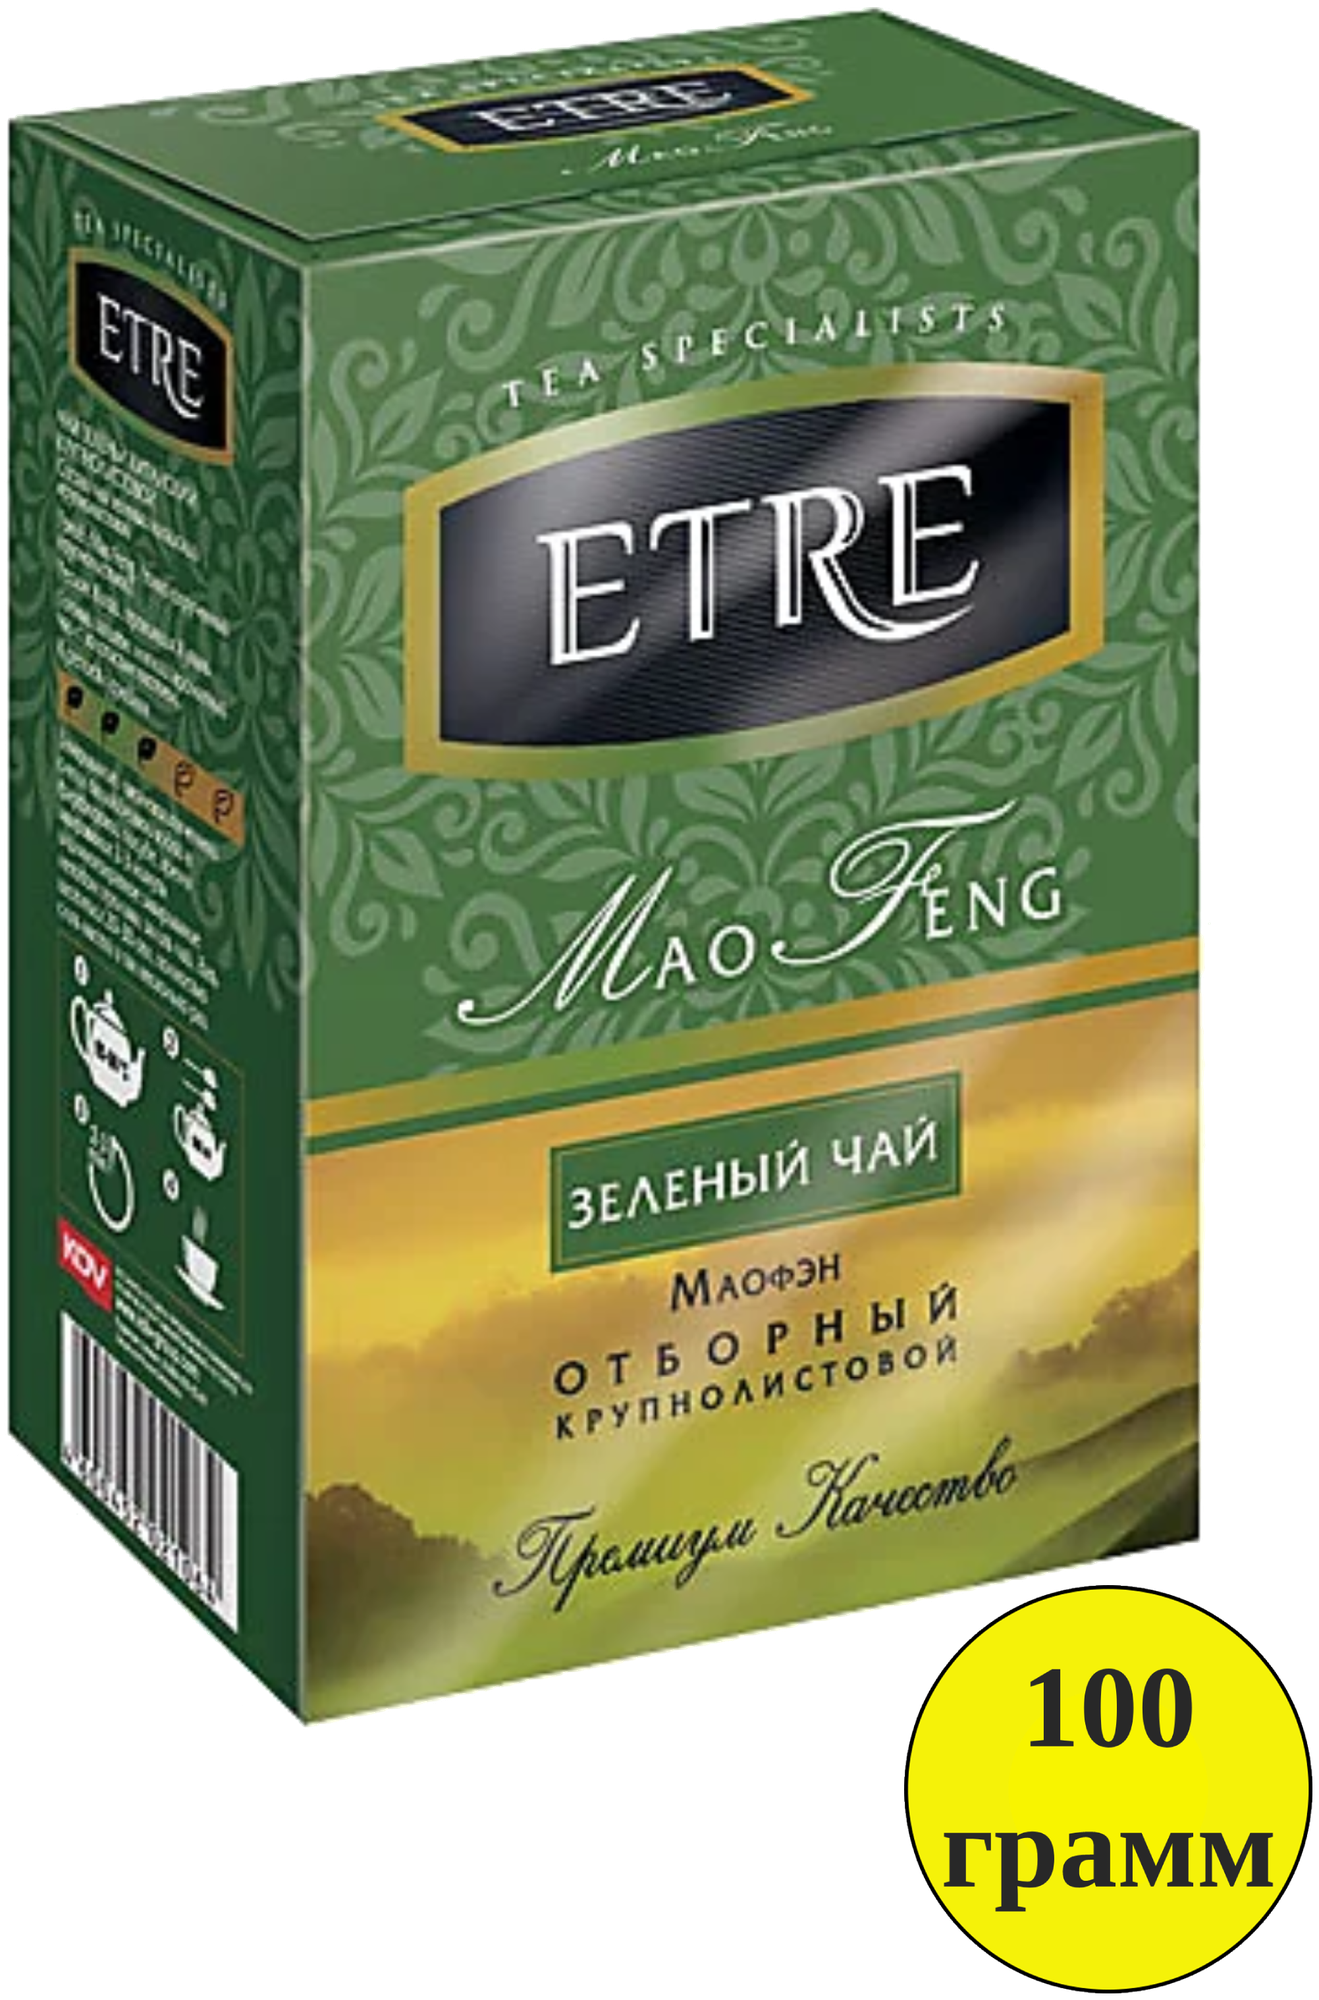 Чай ETRE mao Feng зеленый крупнолистовой, 100 г KDV